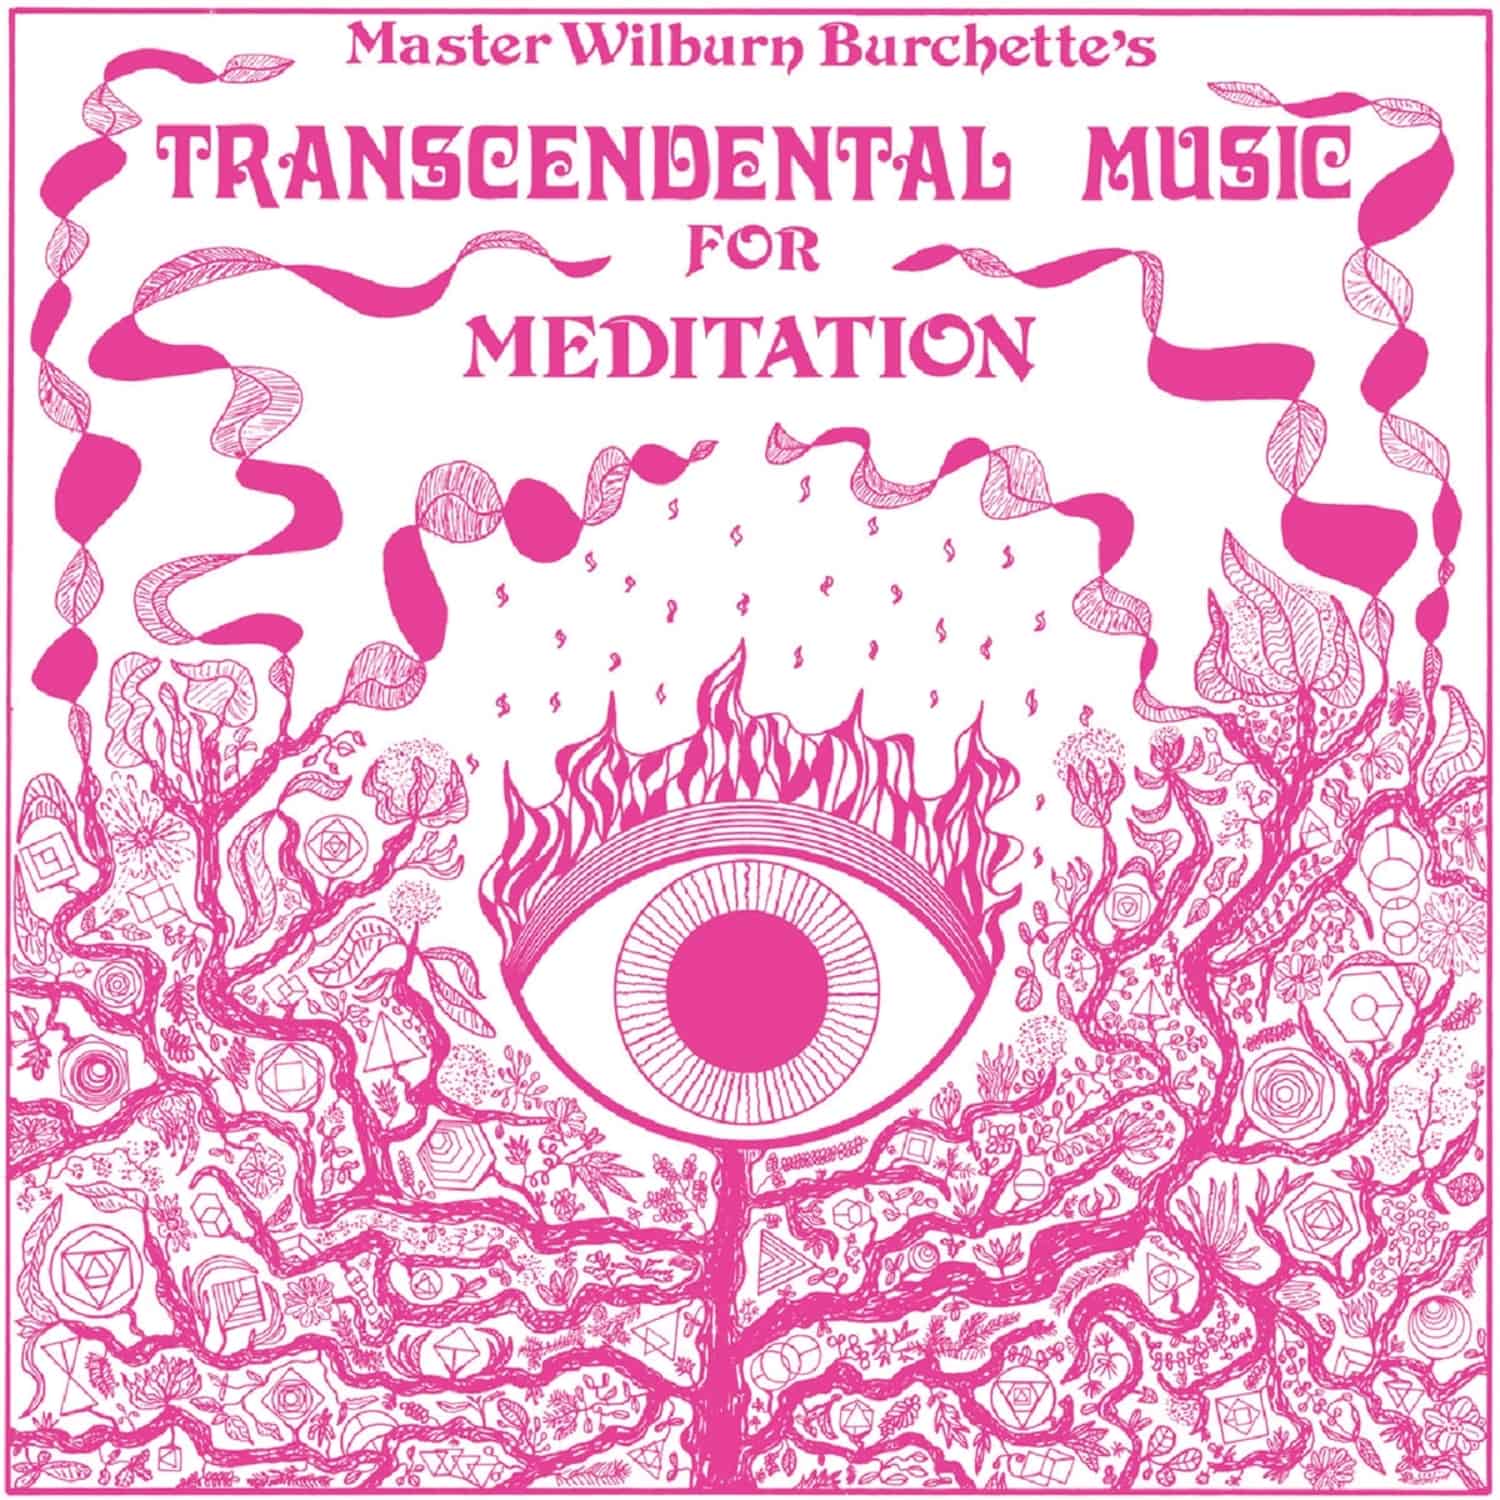 Master Wilburn Burchette - TRANSCENDENTAL MUSIC FOR MEDITATION 